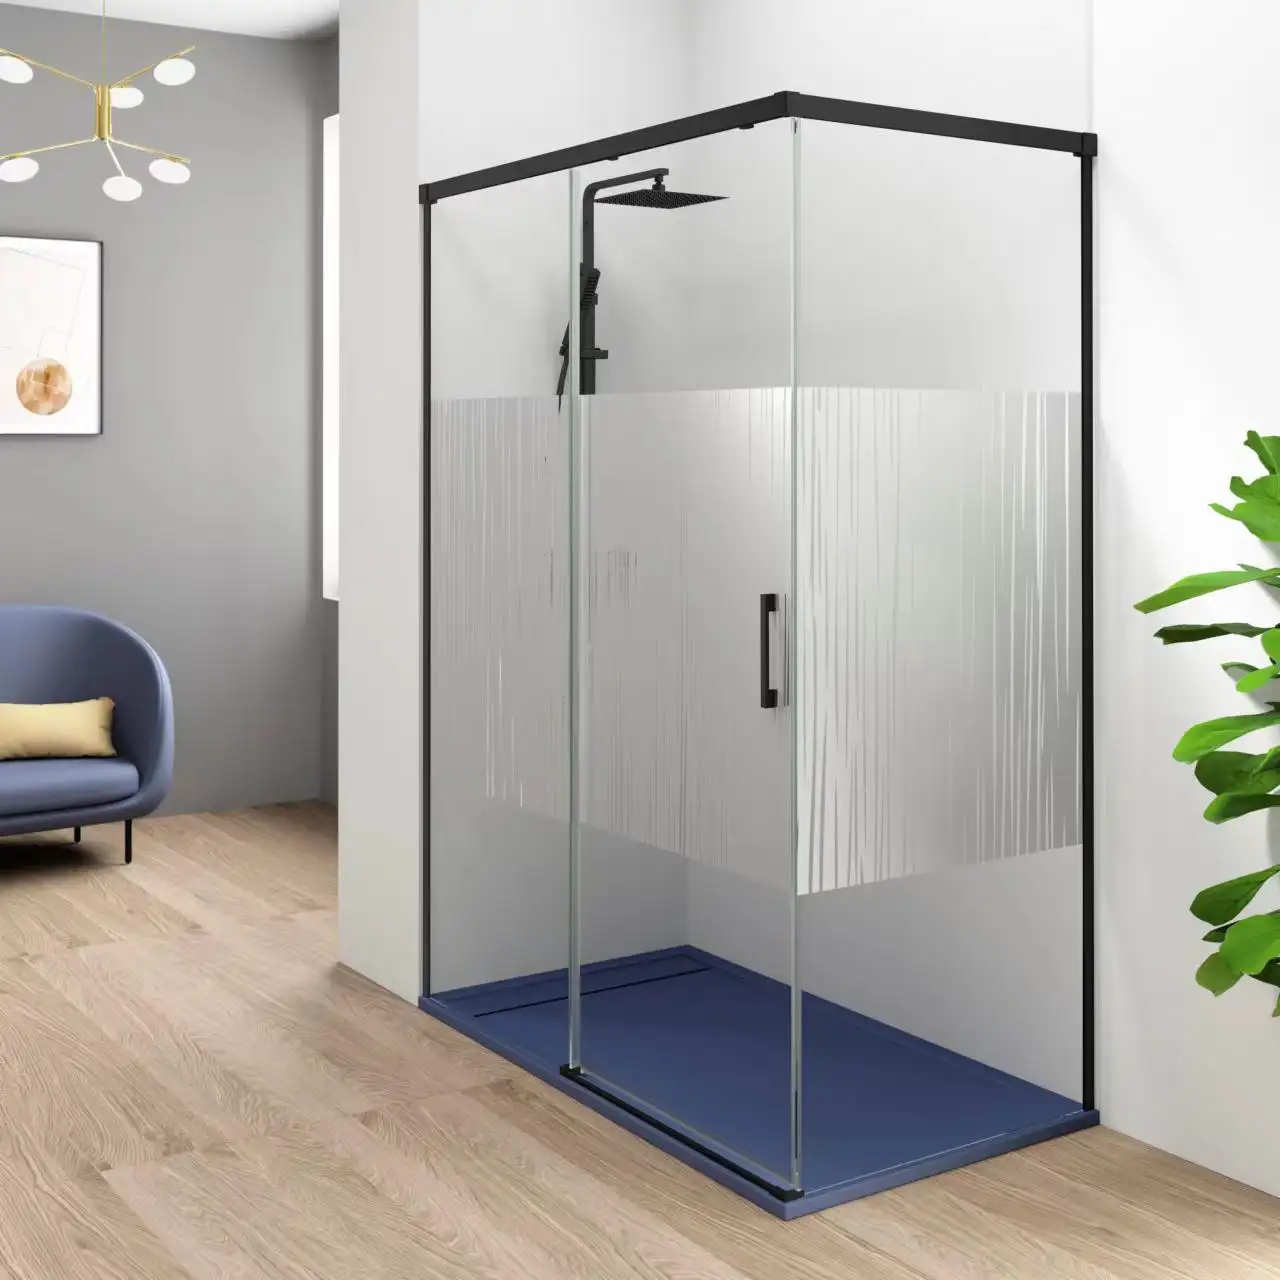 Moderne Ecke Badezimmer Waschraum schwarz Dusch abtrennungen Raum Duschkabine